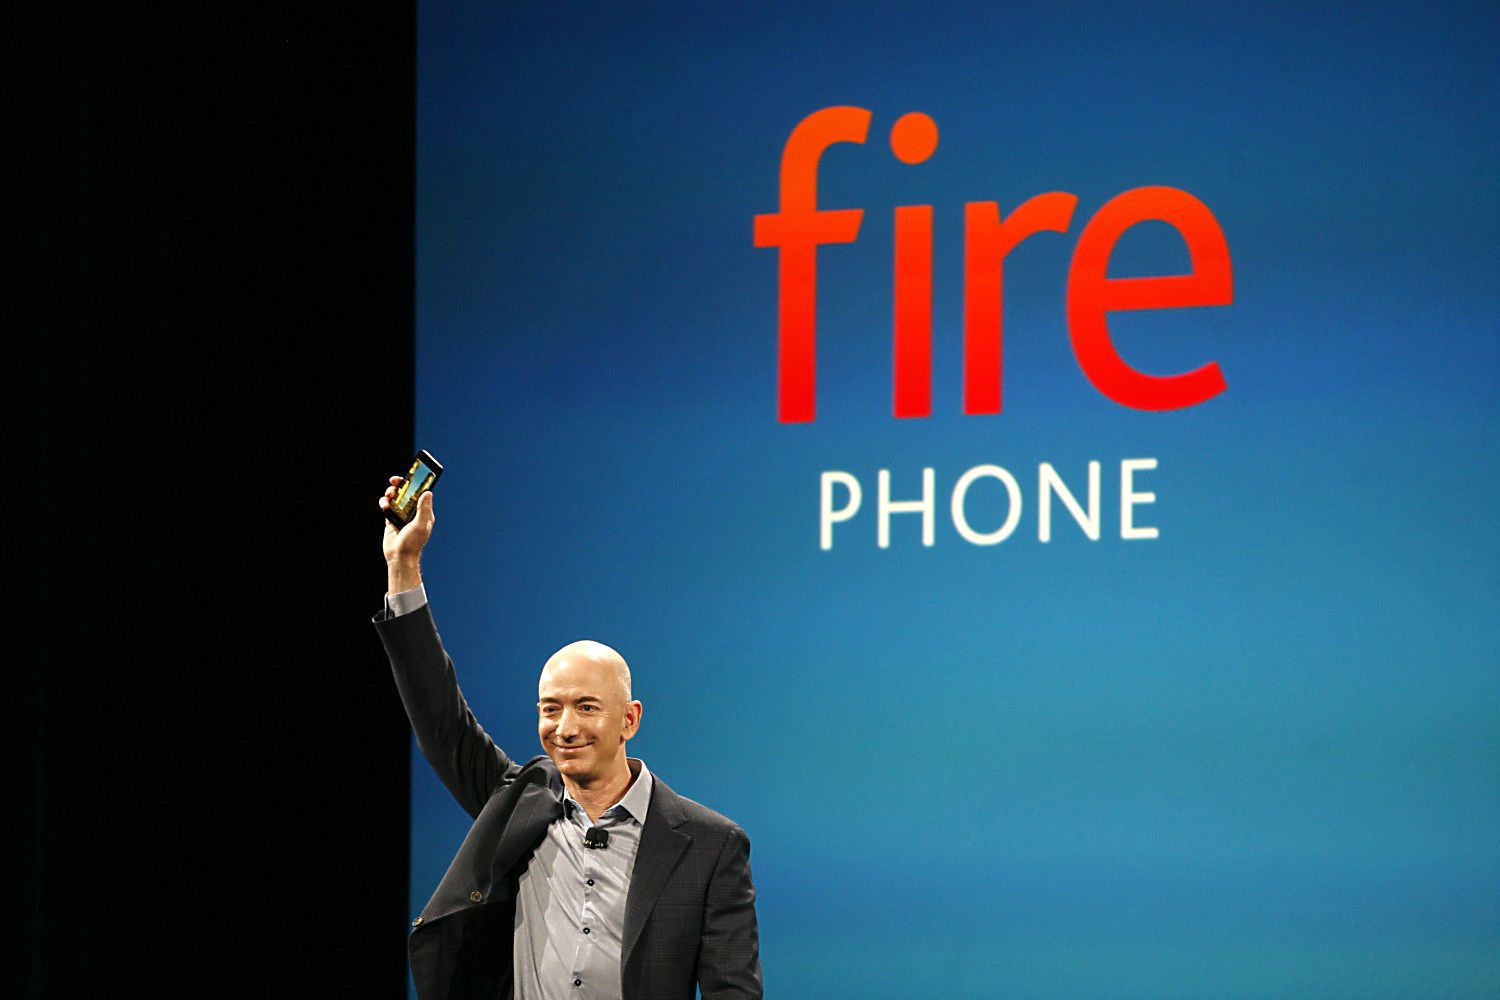 Amazon Fire Phoneが発表されましたね。早速壁紙を。